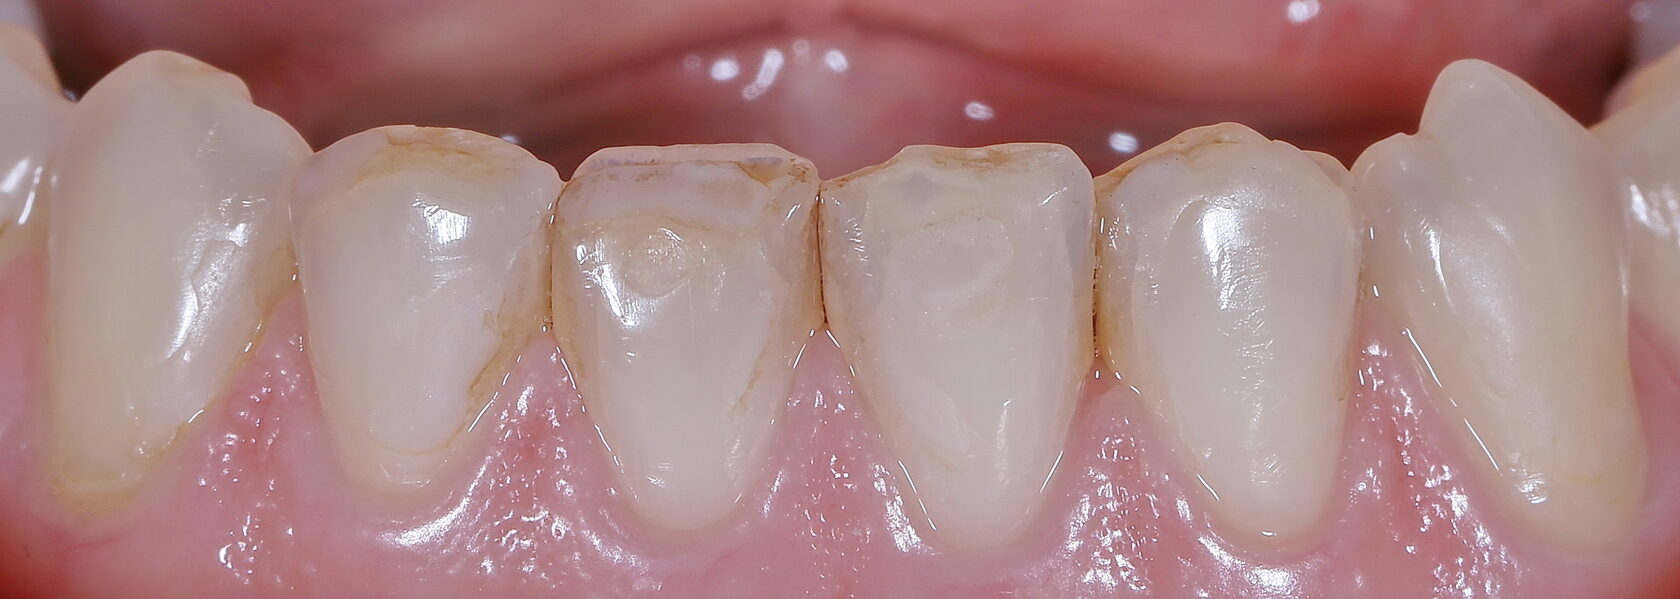 Эстетическая реставрация зубов: показания, способы, этапы